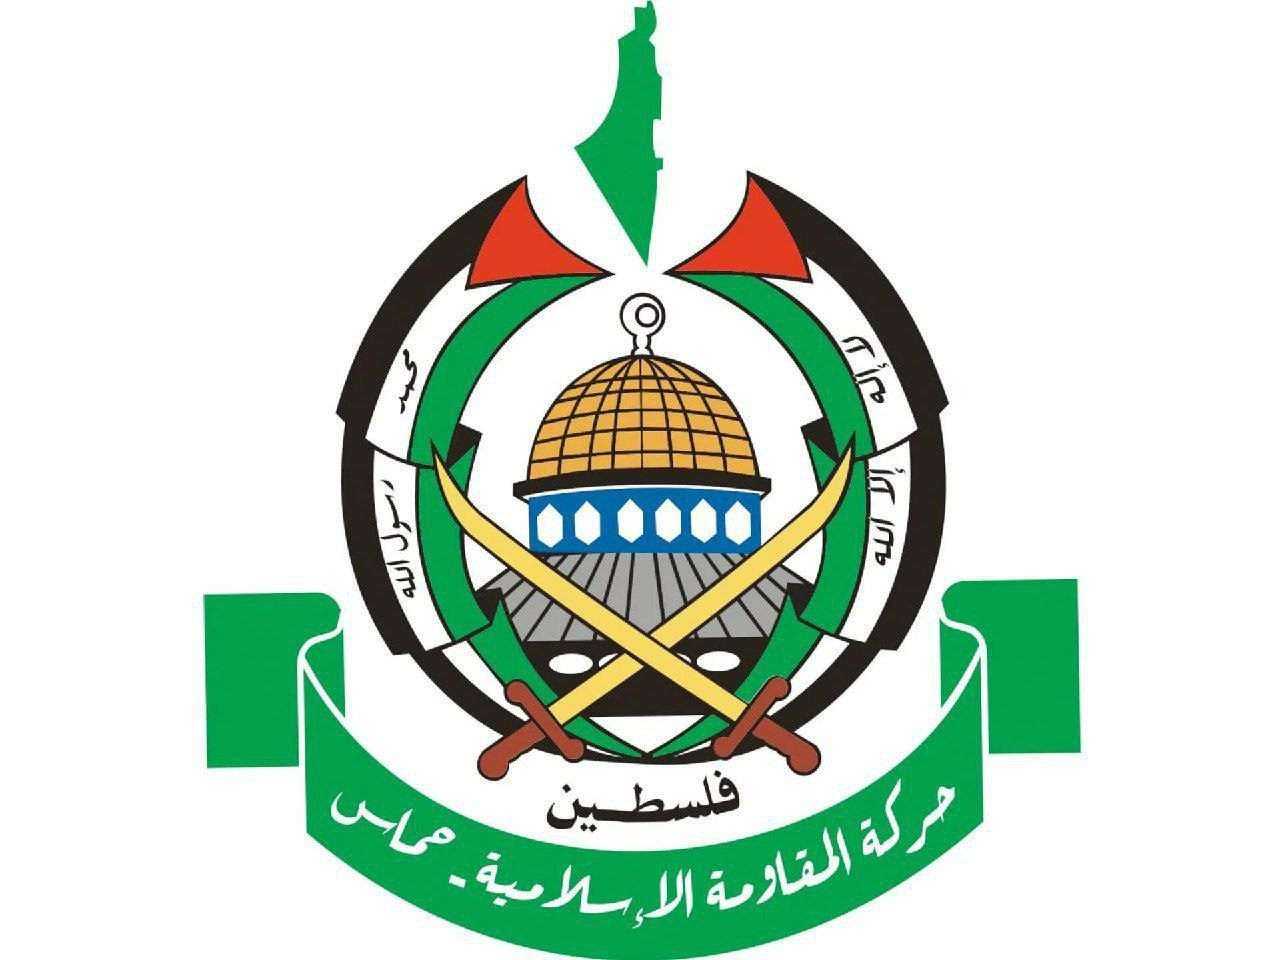 حماس : عملية إيران رد طبيعي على اغتيال قادة الحرس الثوري
